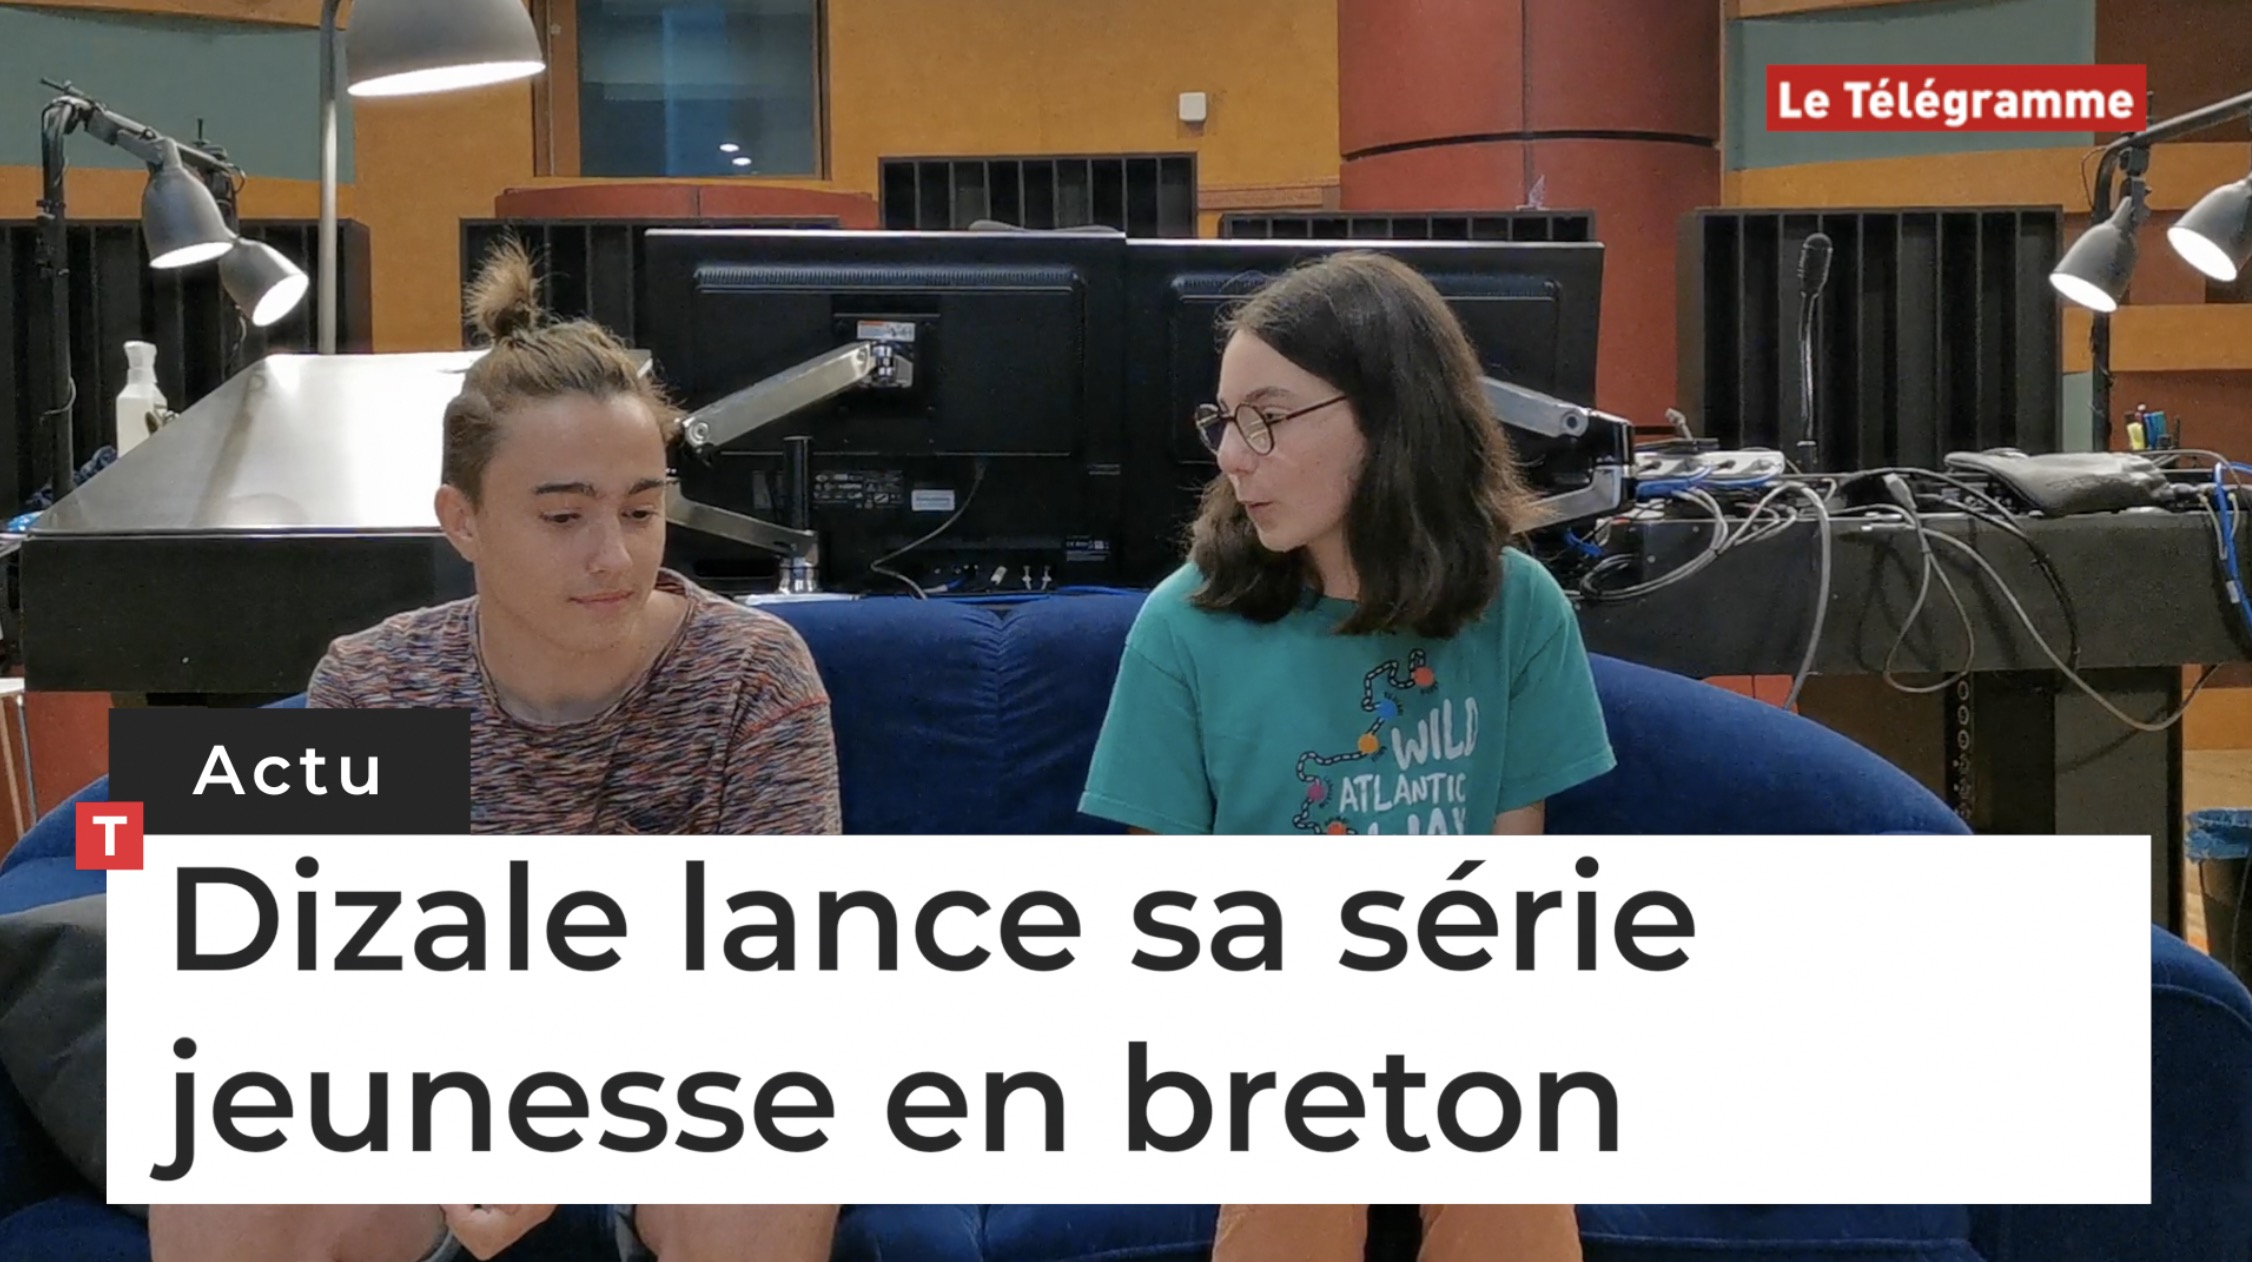 Dizale lance sa série jeunesse en breton (Le Télégramme)